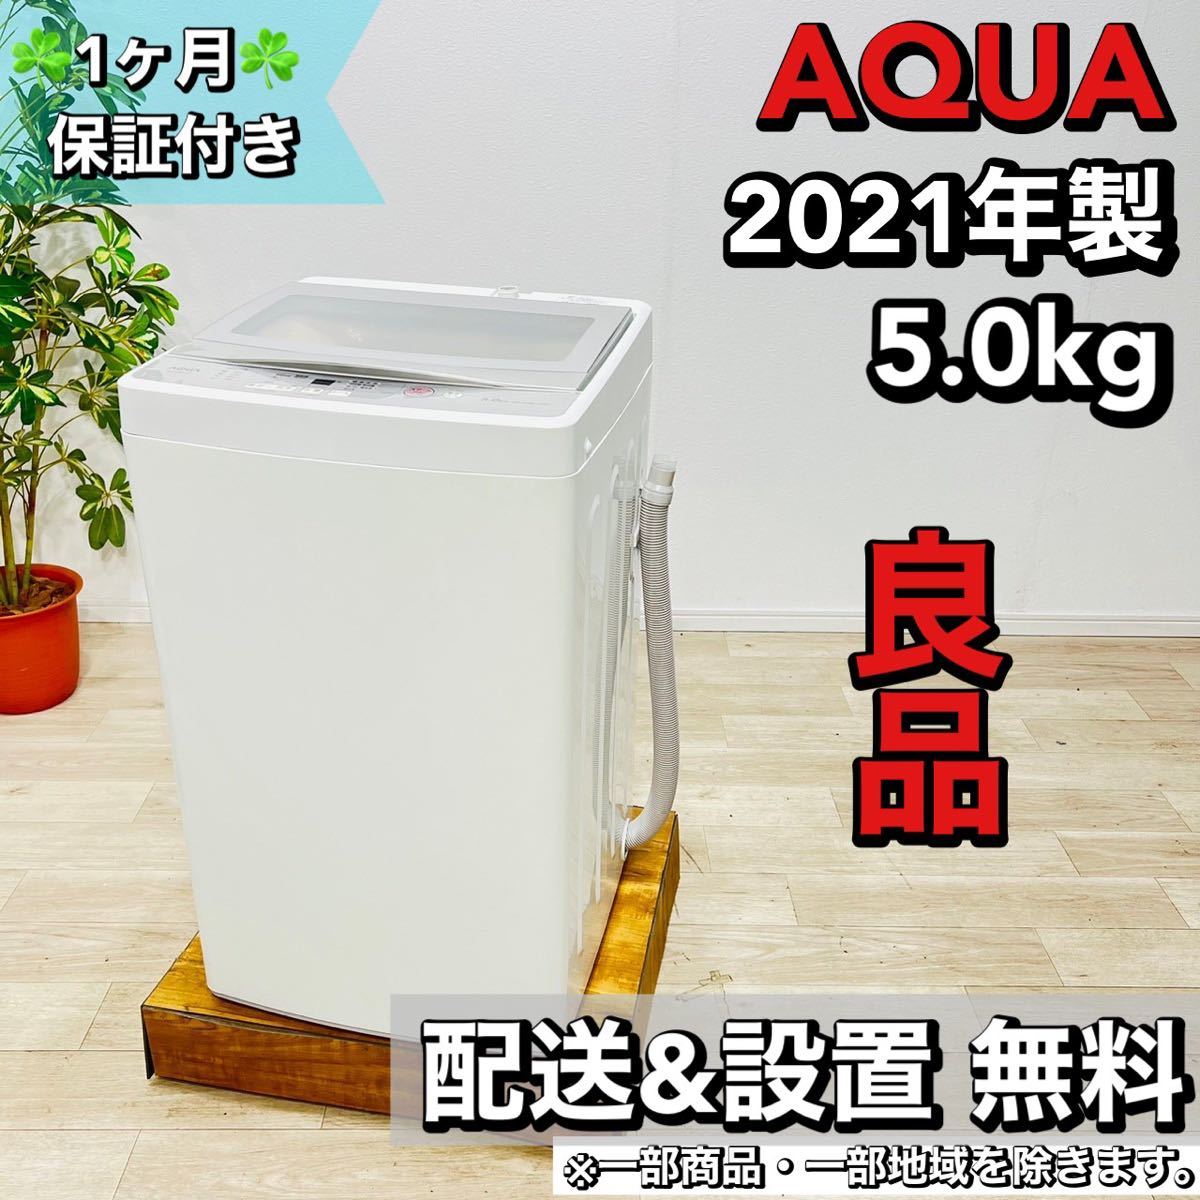 【公式】 AQUA a1592 洗濯機 5.0kg 2021年製 5 5kg以上